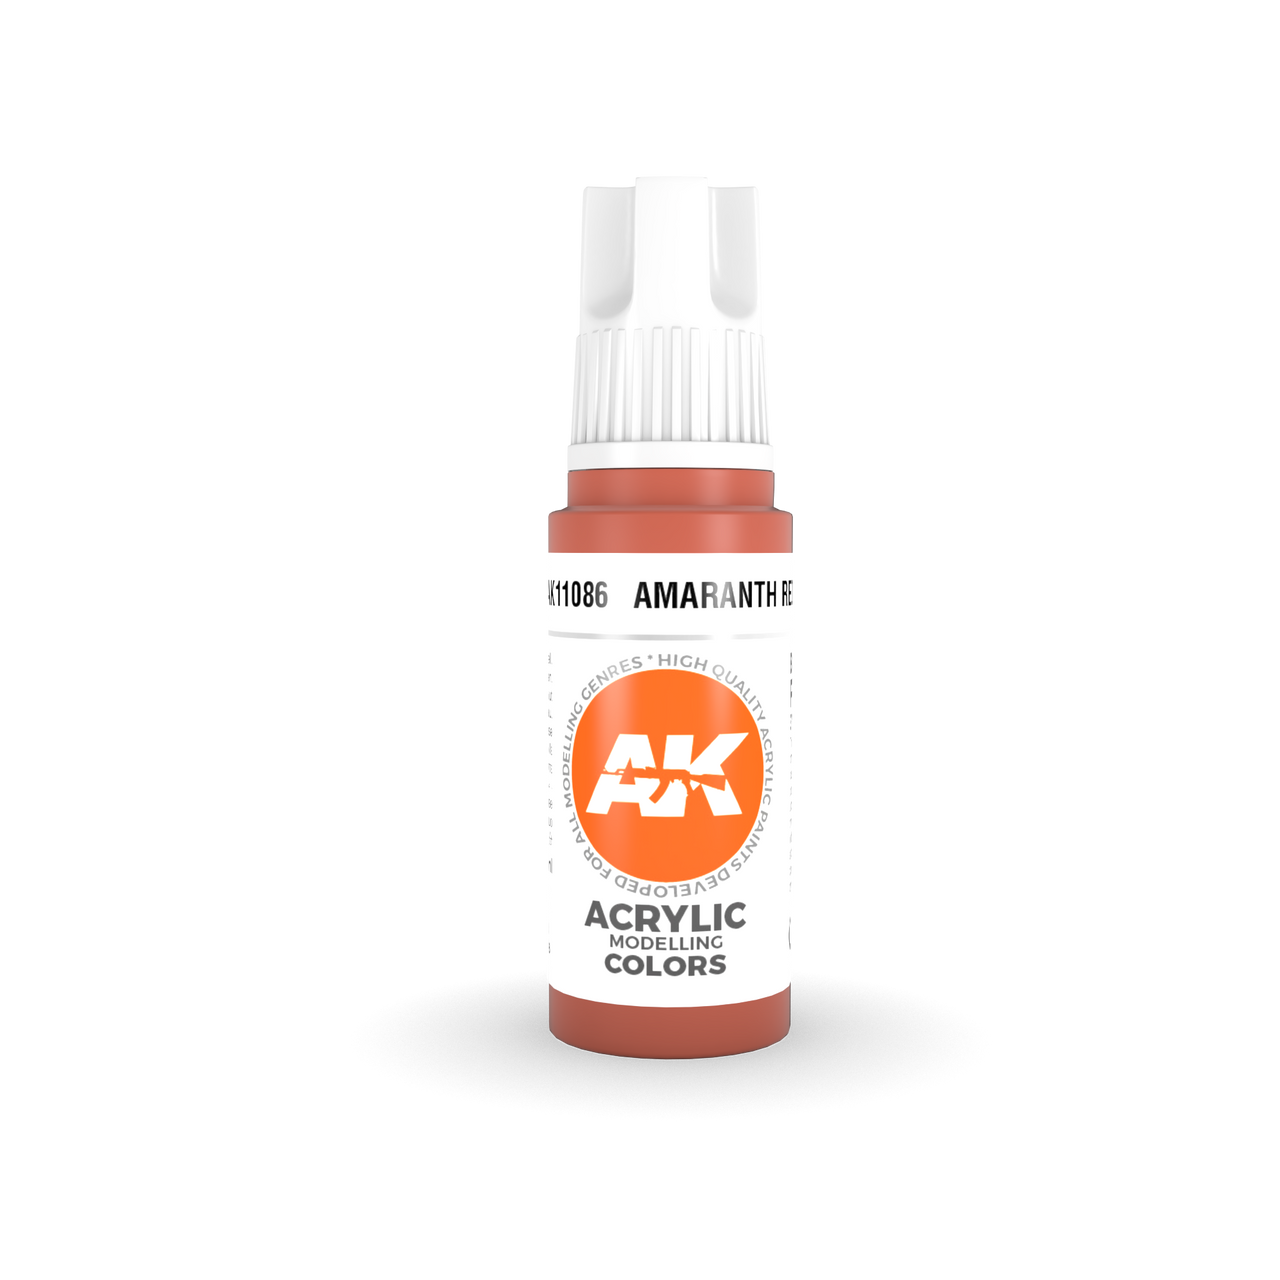 Amaranth Red - AK 3Gen Acrylic